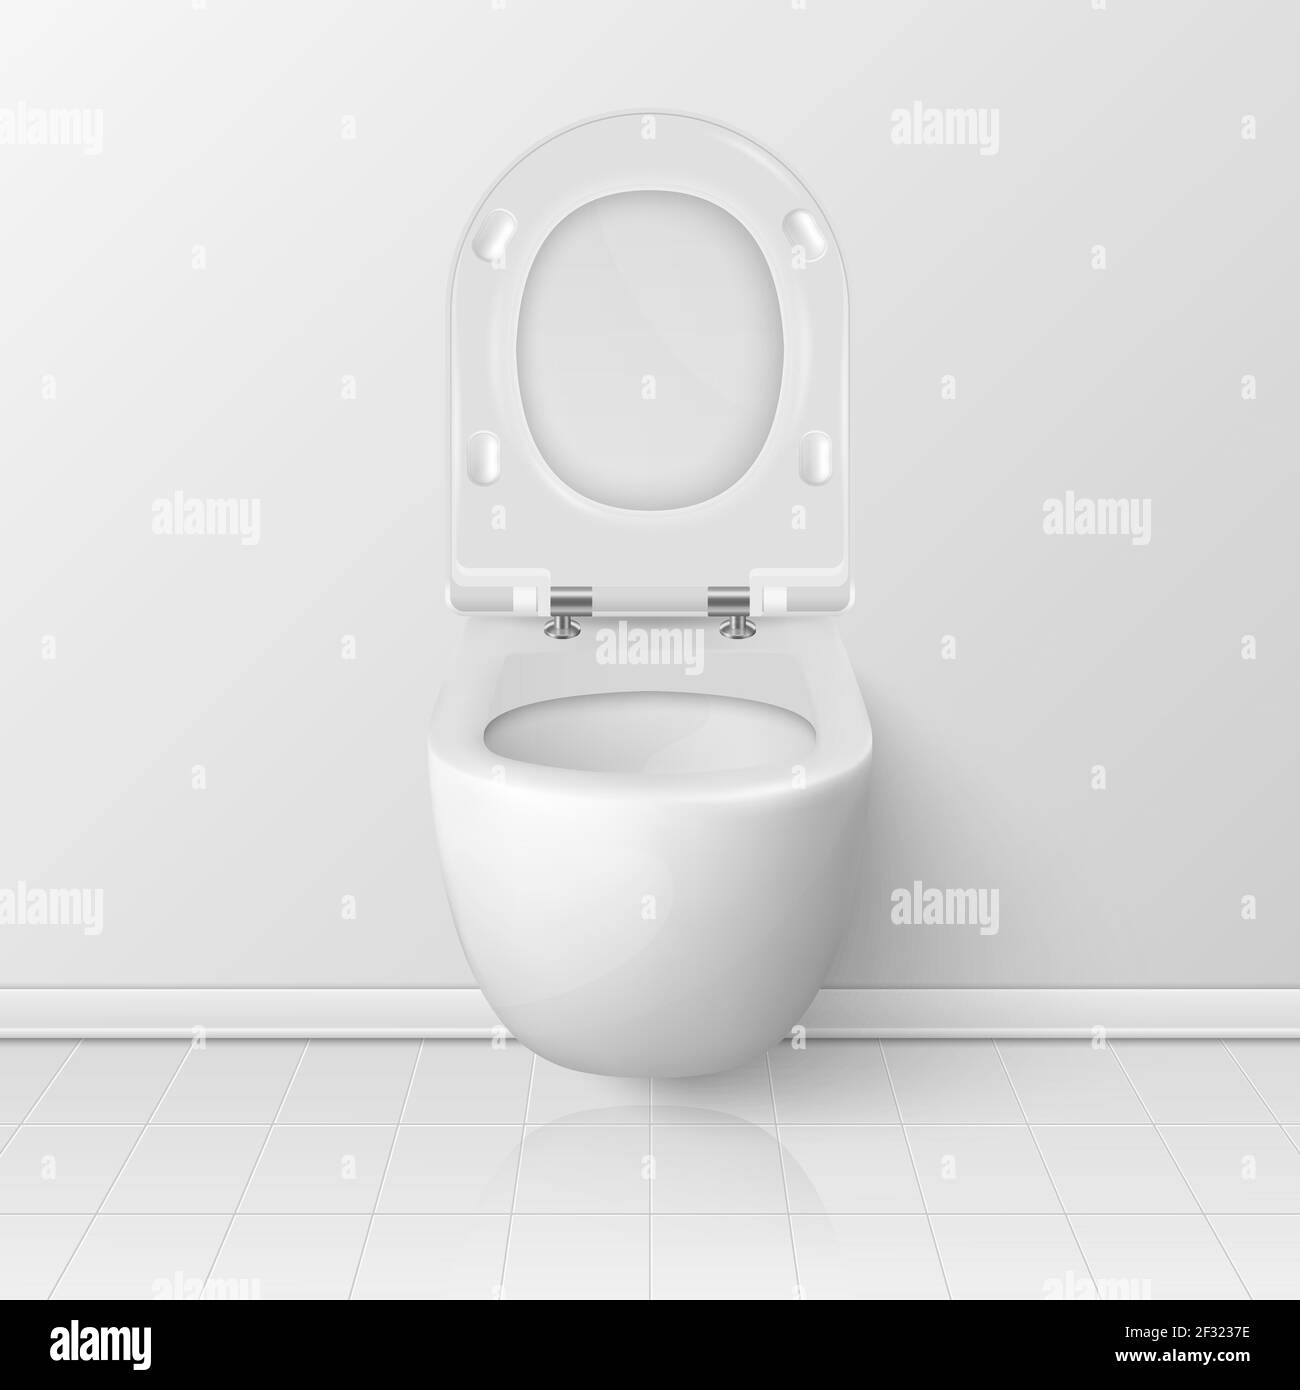 Vector 3d Realistic blanc ouvert cuvette de toilette en céramique avec couvercle dans la salle de toilette. Plomberie, maquette, modèle de conception pour l'intérieur, nettoyage, hygiène Illustration de Vecteur